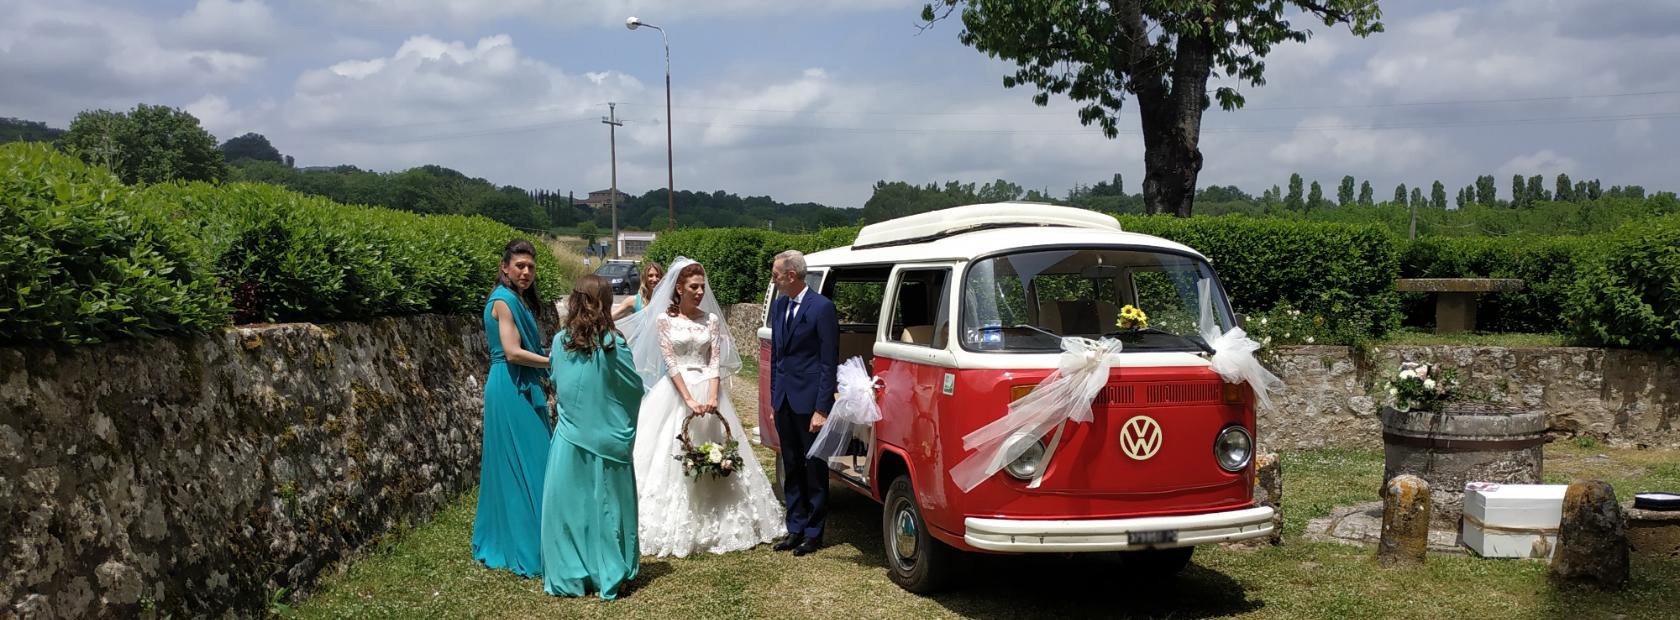 Noleggio Pulmino Volkswagen matrimonio Toscana - Umbria